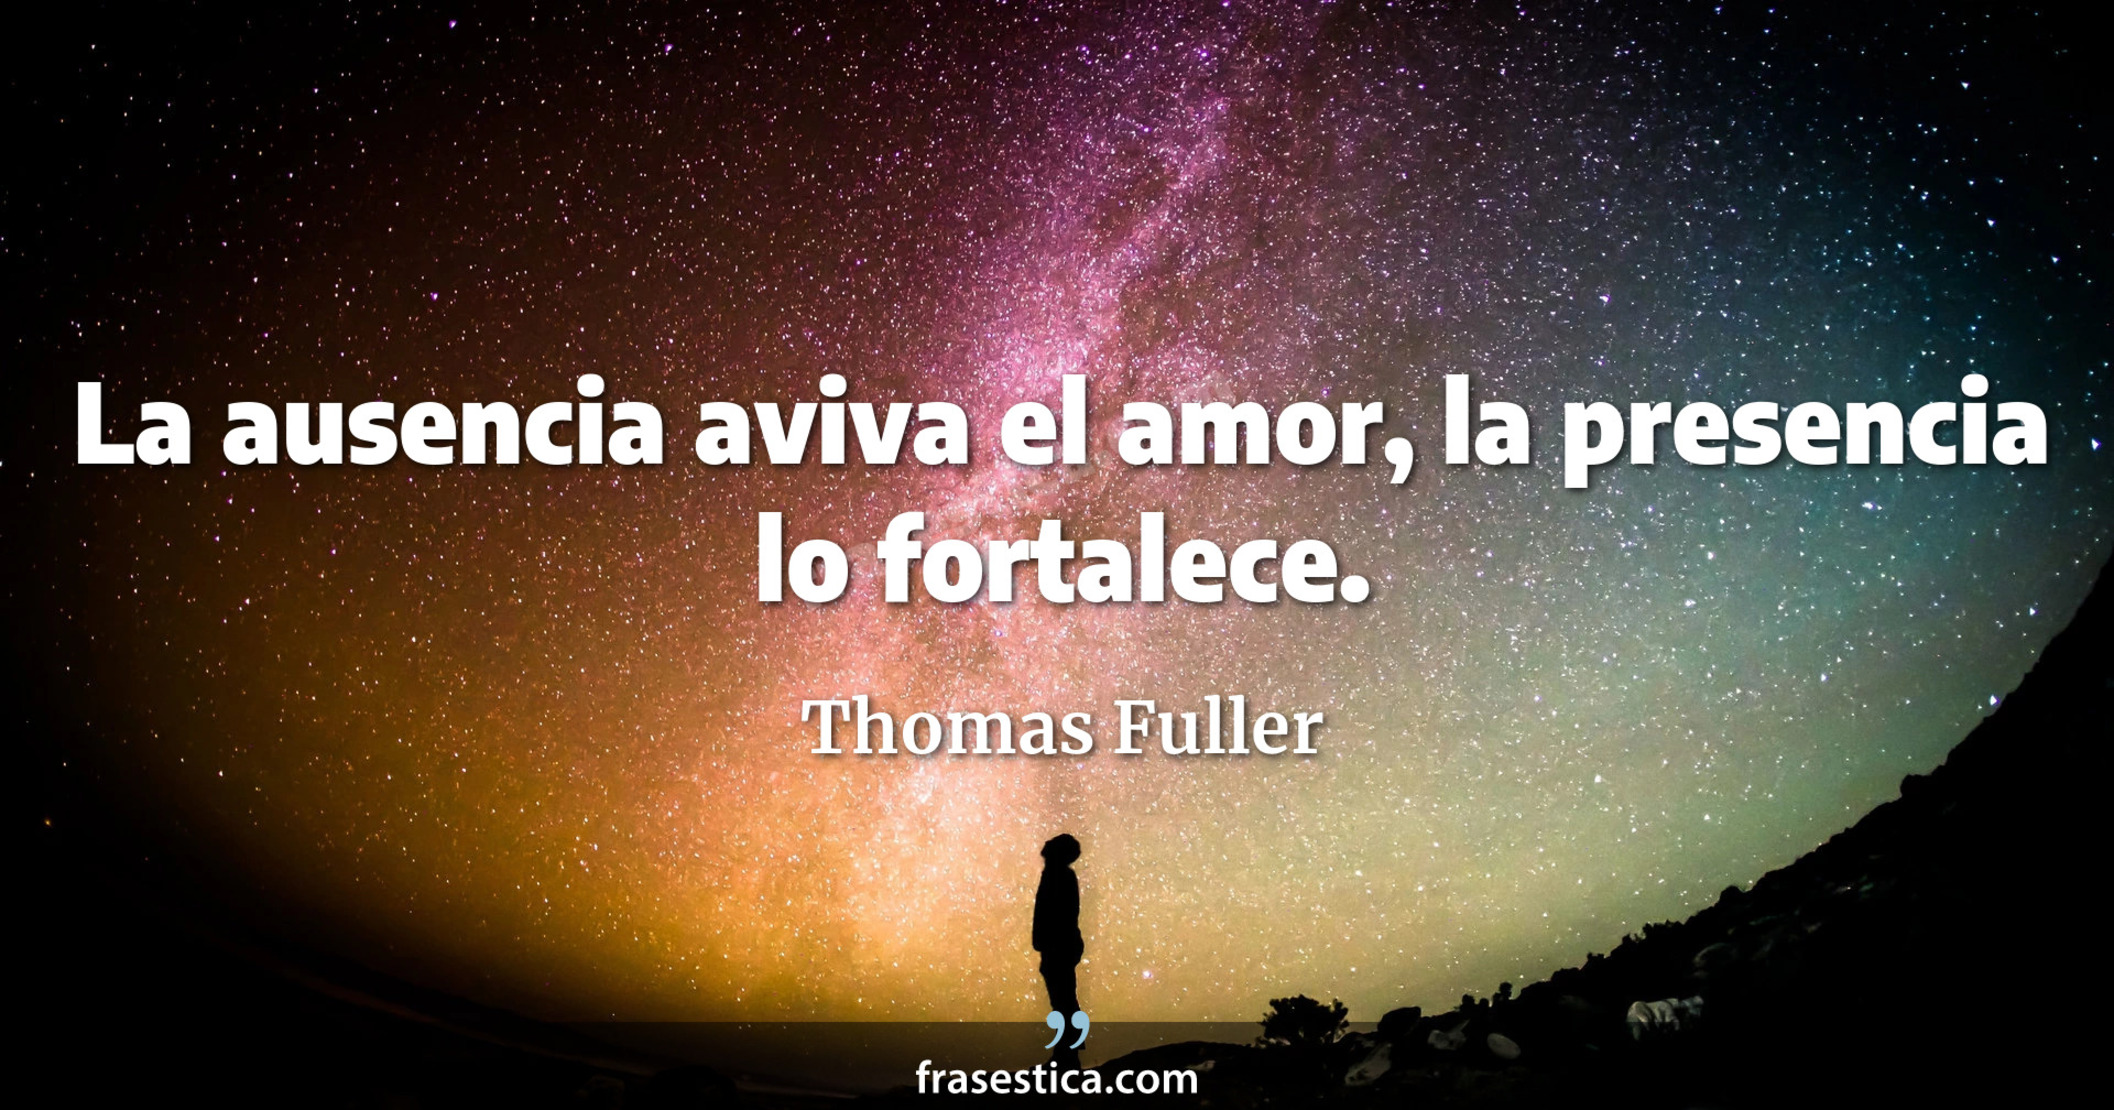 La ausencia aviva el amor, la presencia lo fortalece. - Thomas Fuller